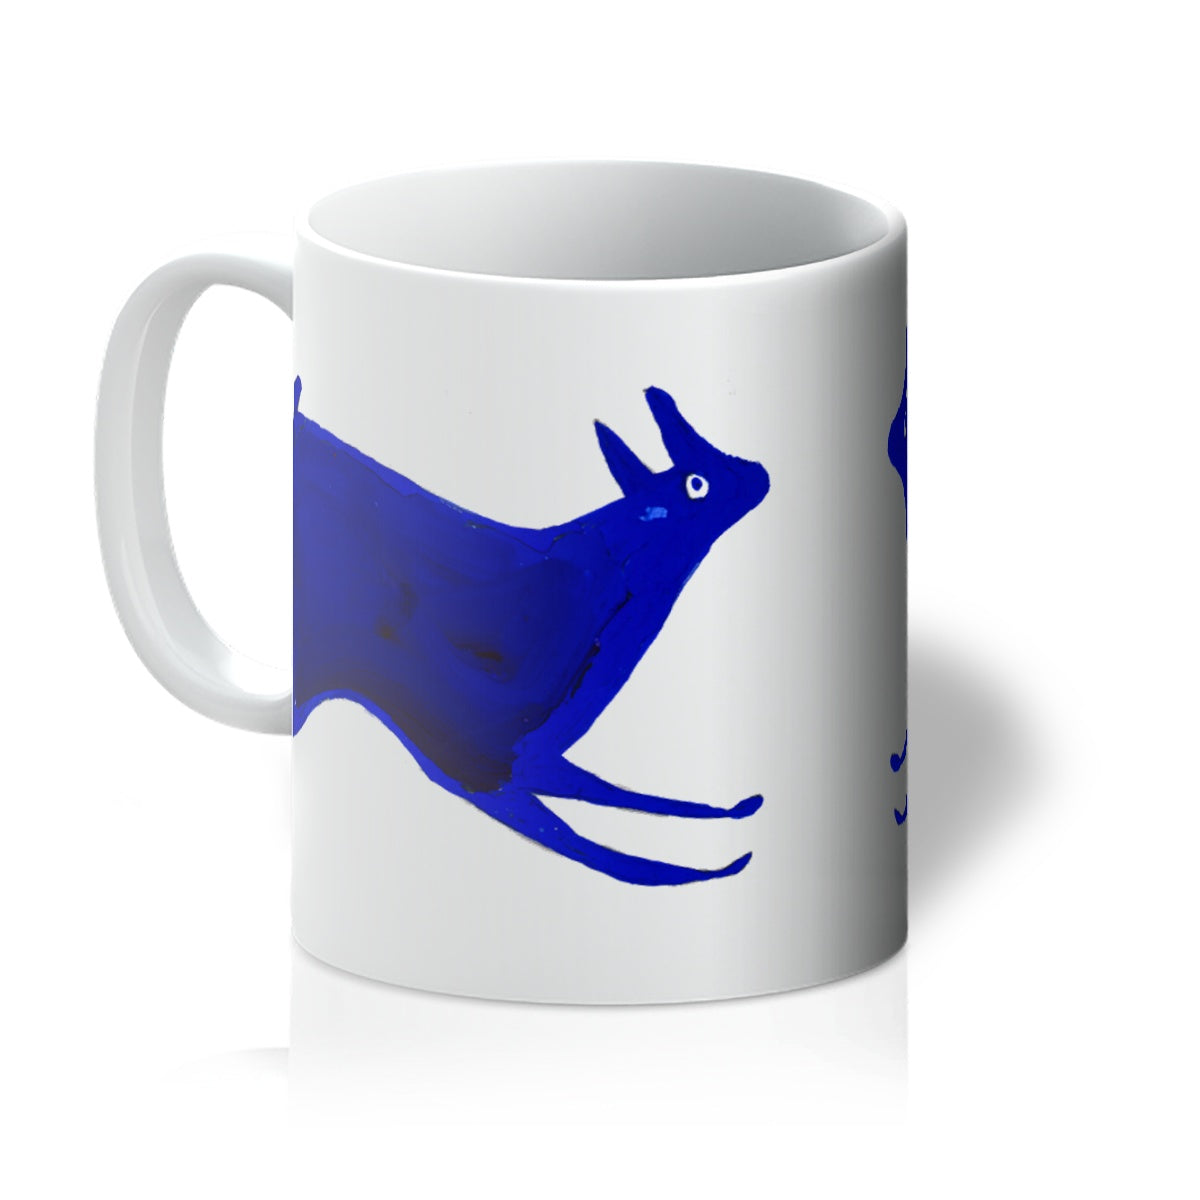 Blue Rabbit Running by Bill Traylor c.1941 - Mug